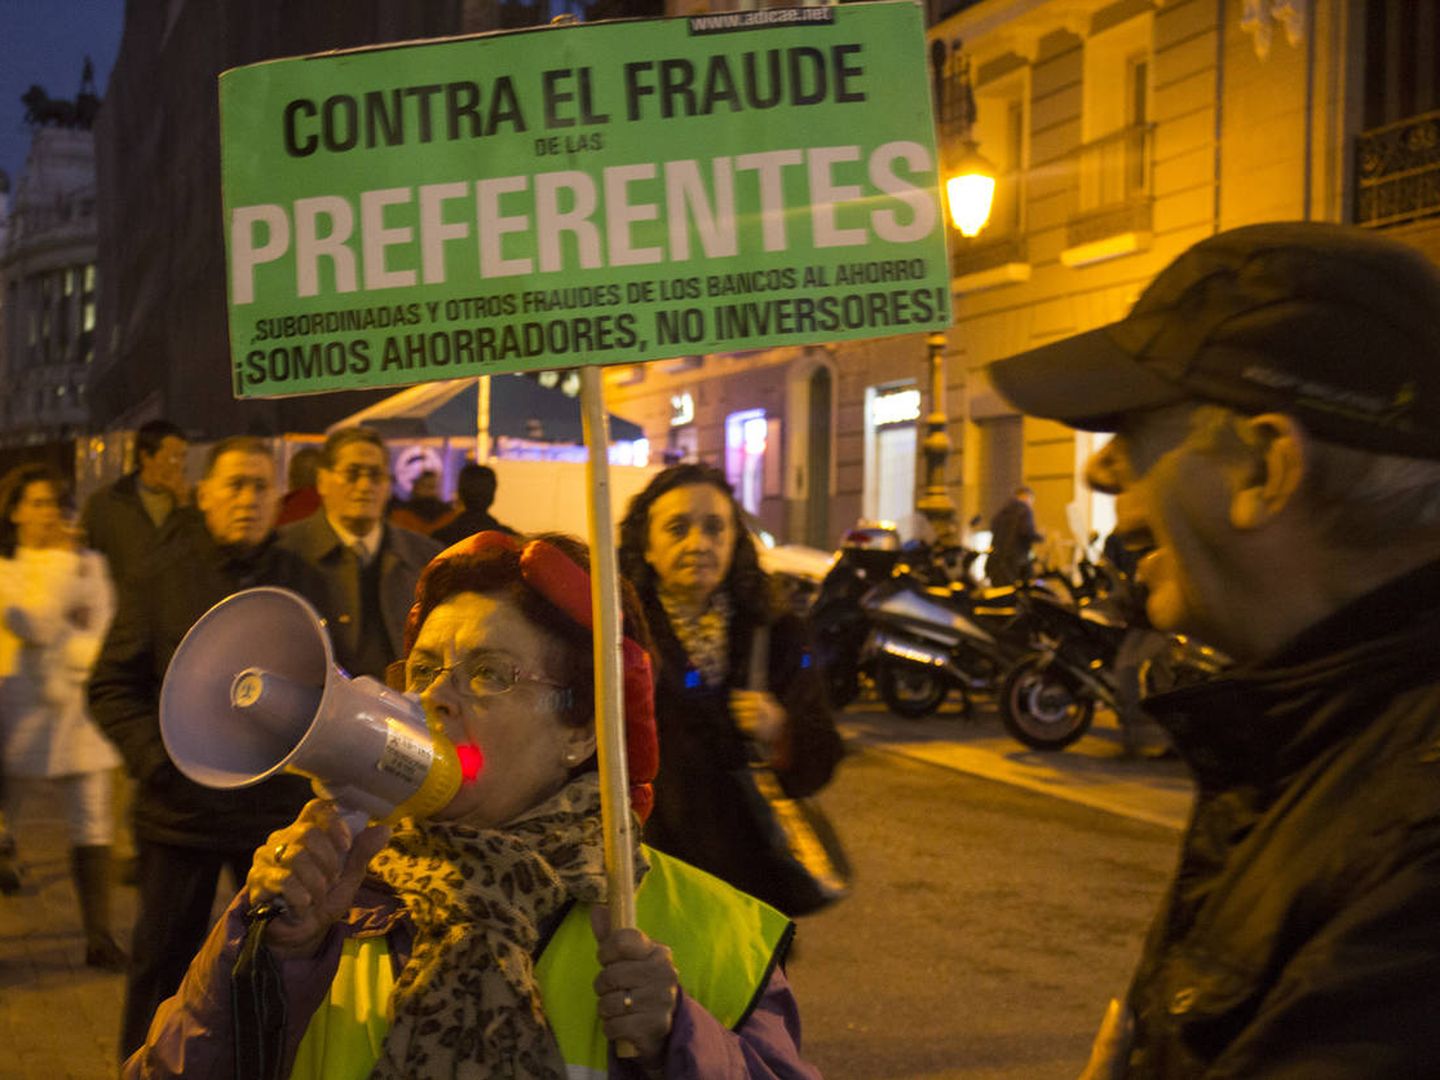 Una manifestación en Madrid contra la estafa de las preferentes en 2014. (iStock)